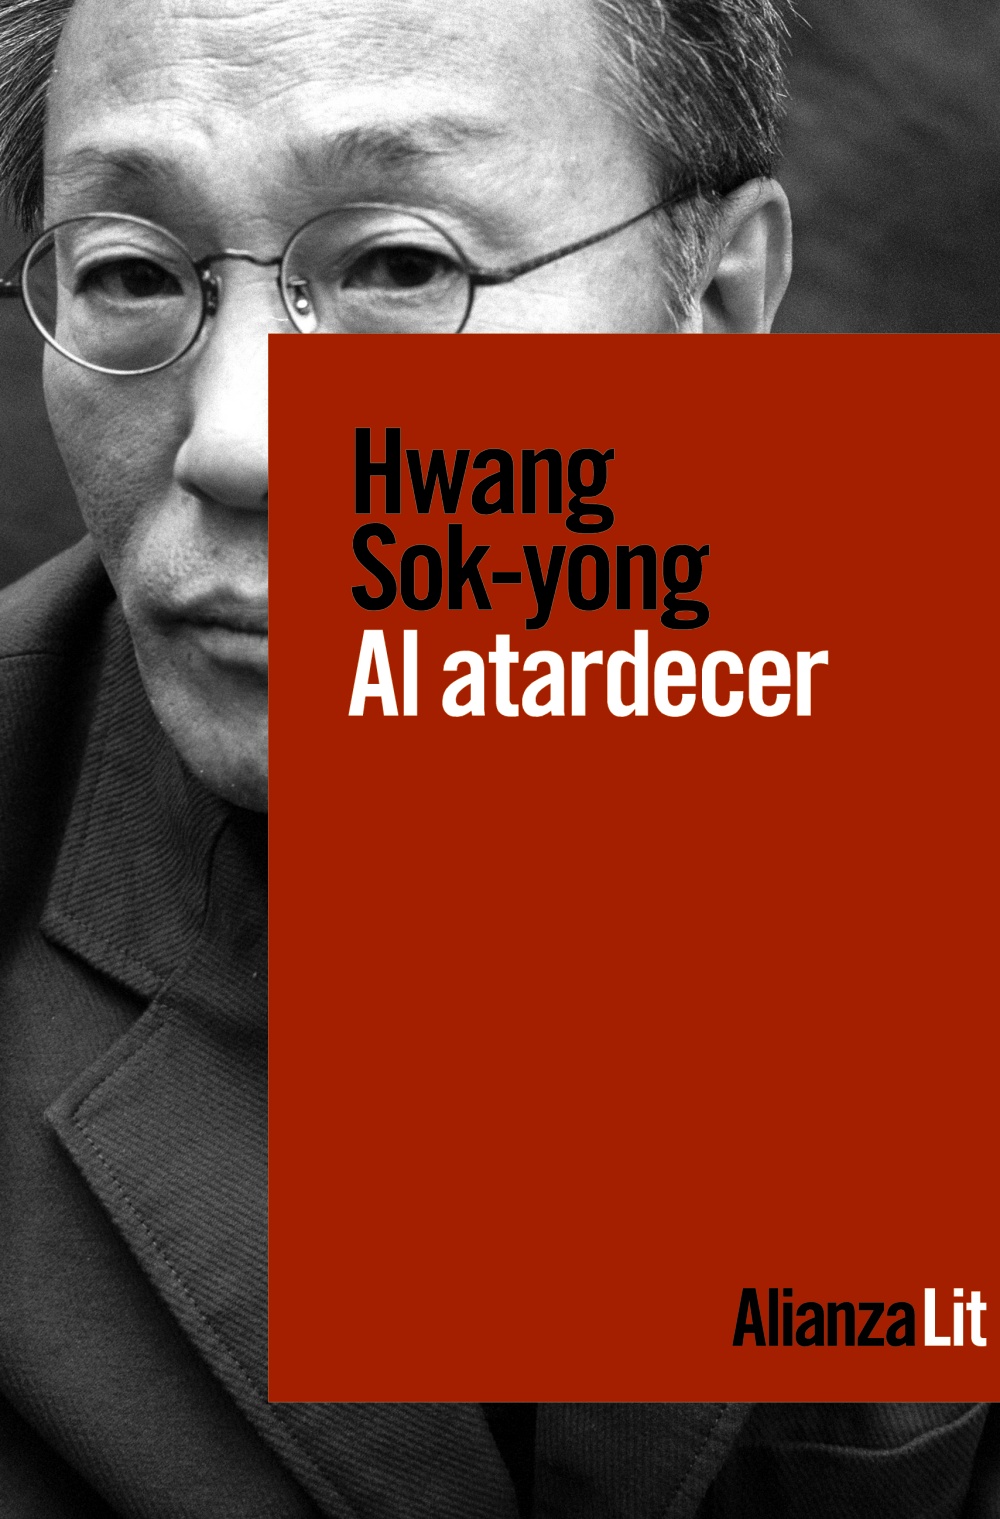 Al atardecer - Hwang  Sok-yong 